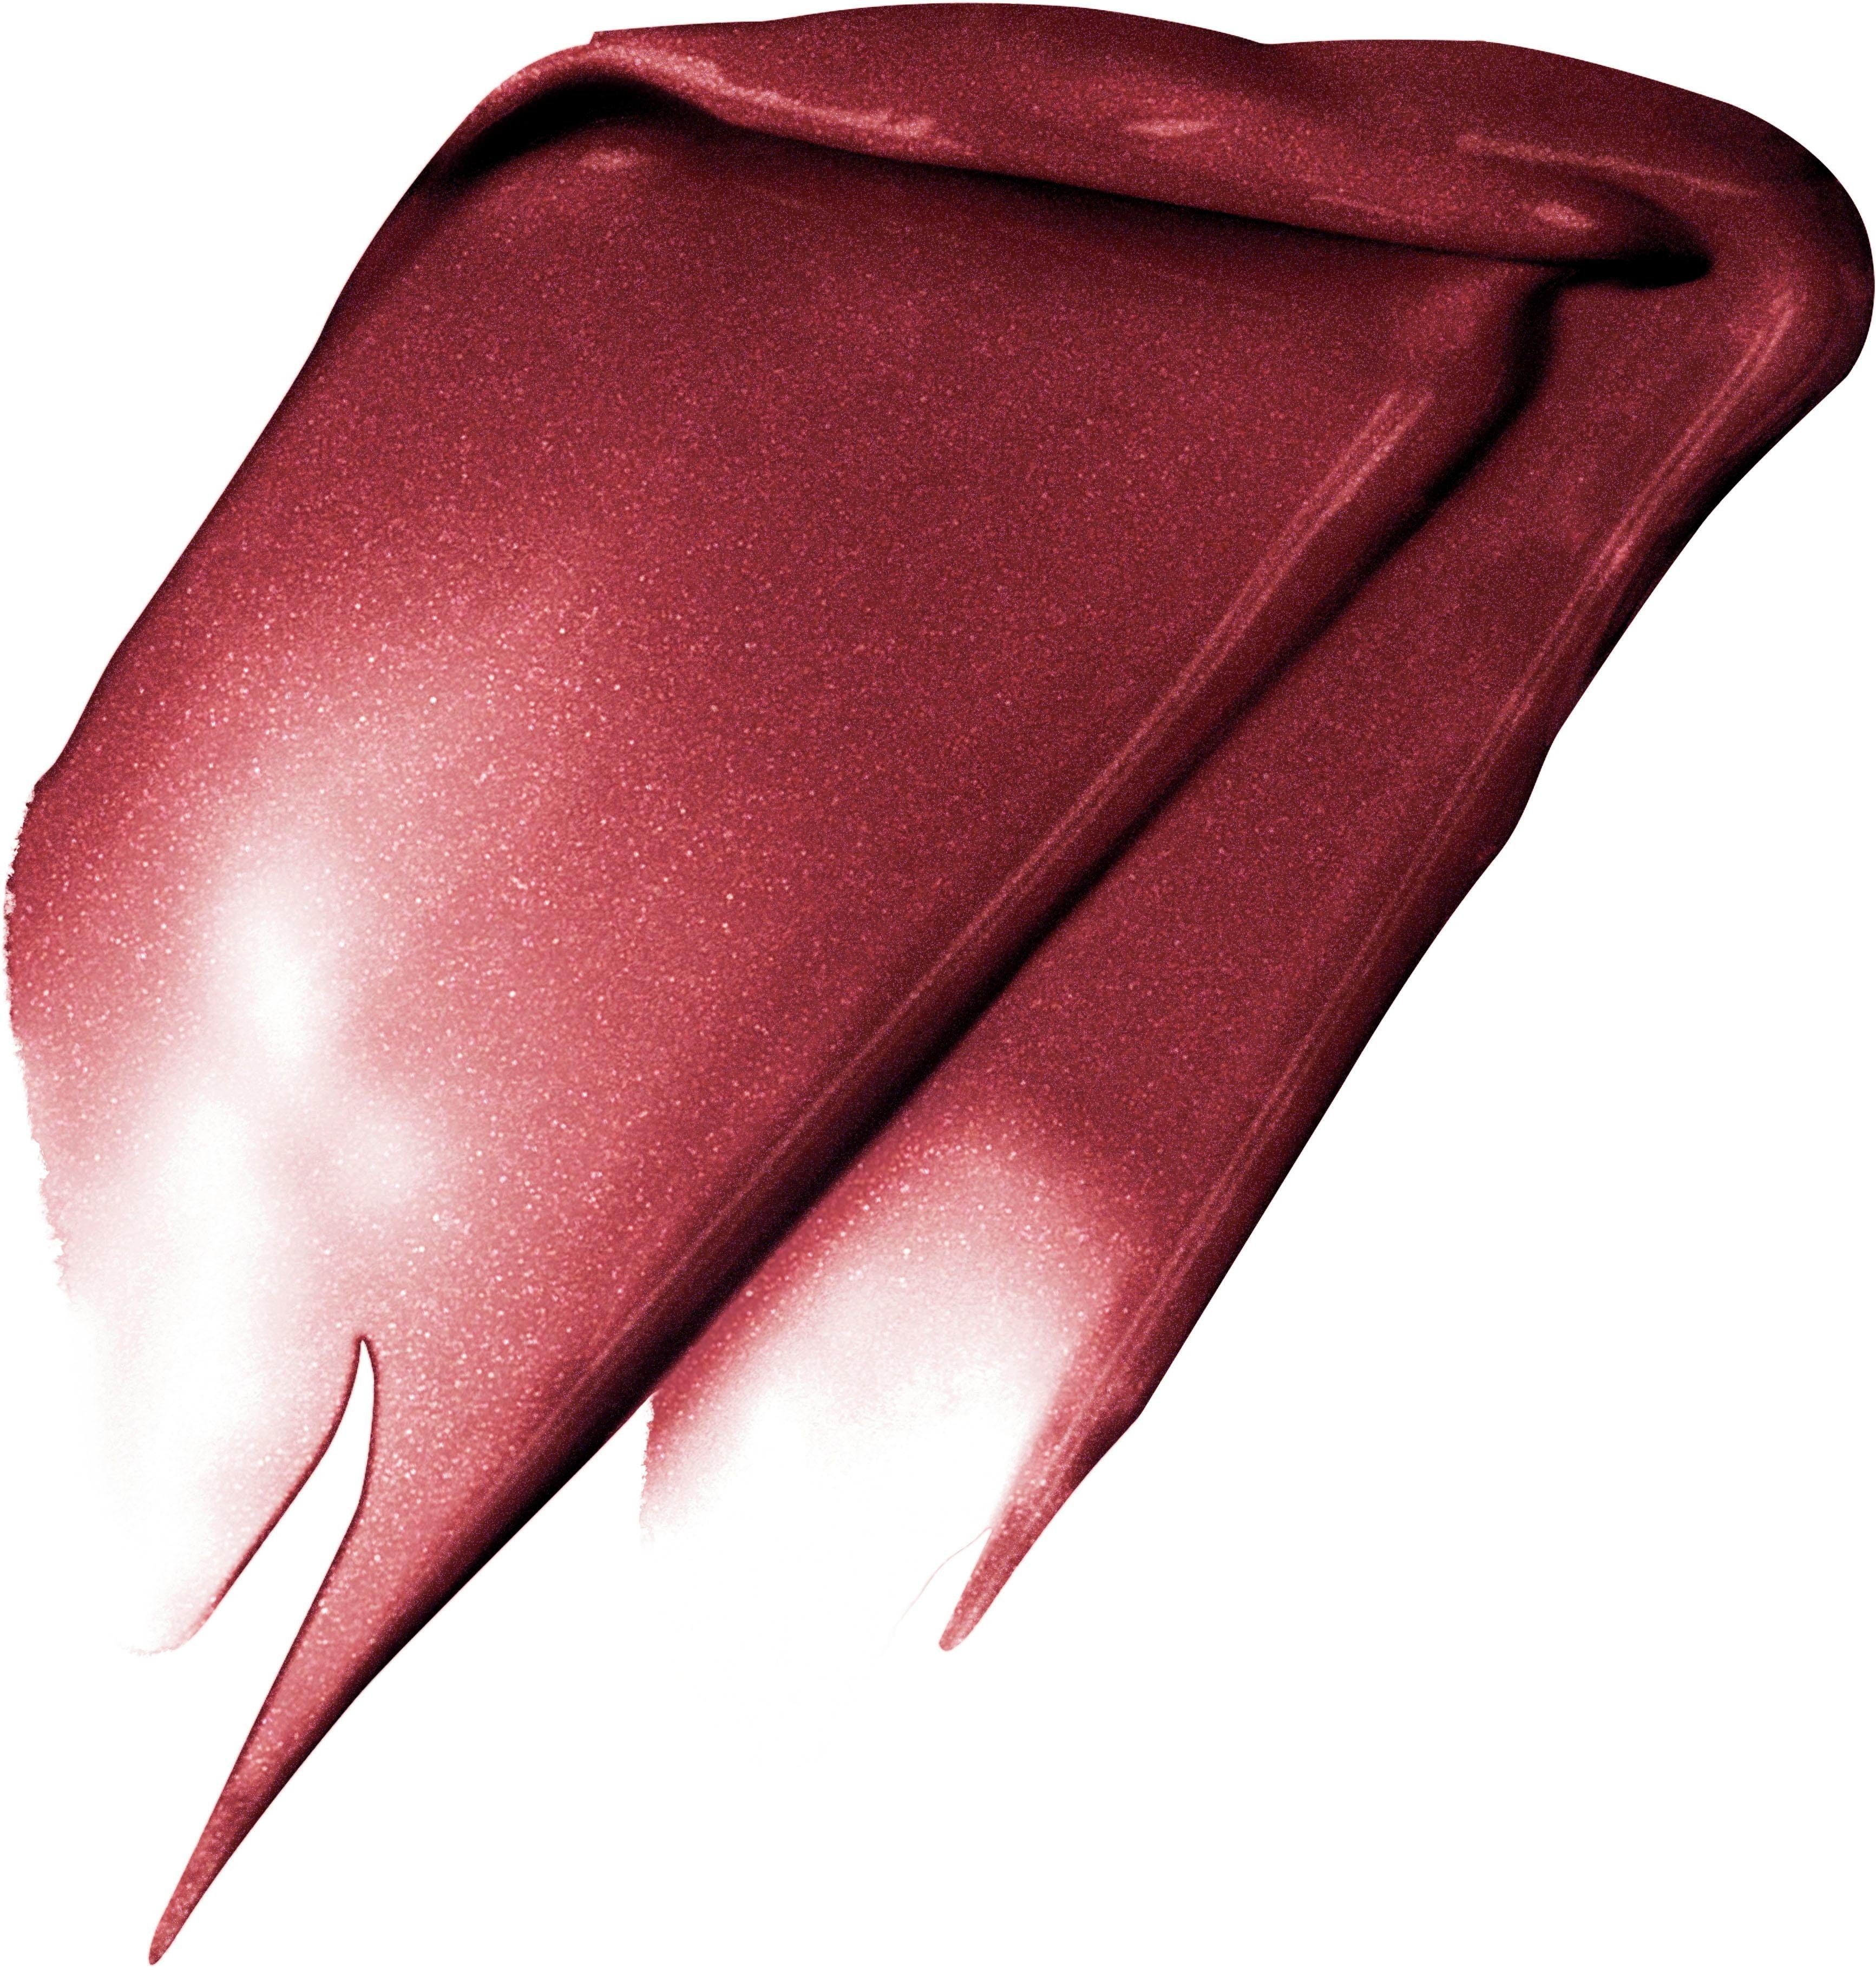 L'ORÉAL PROFESSIONNEL PARIS L'ORÉAL Lippenstift I Signature Fascinate Rouge Metallic 205 PARIS